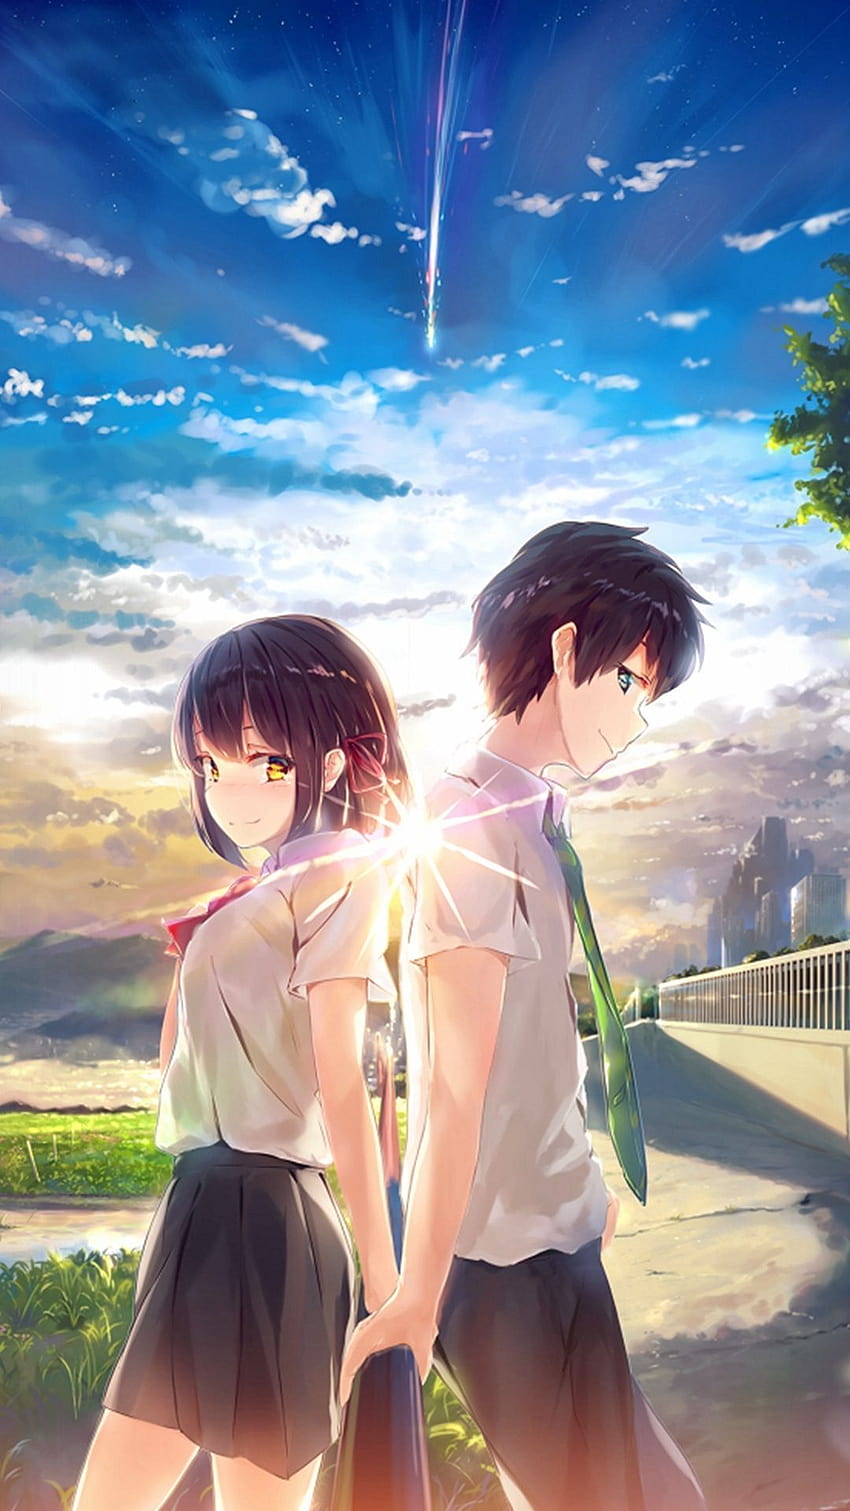 Anime Girl And Boy, süßer Anime Junge und Mädchen HD-Handy-Hintergrundbild